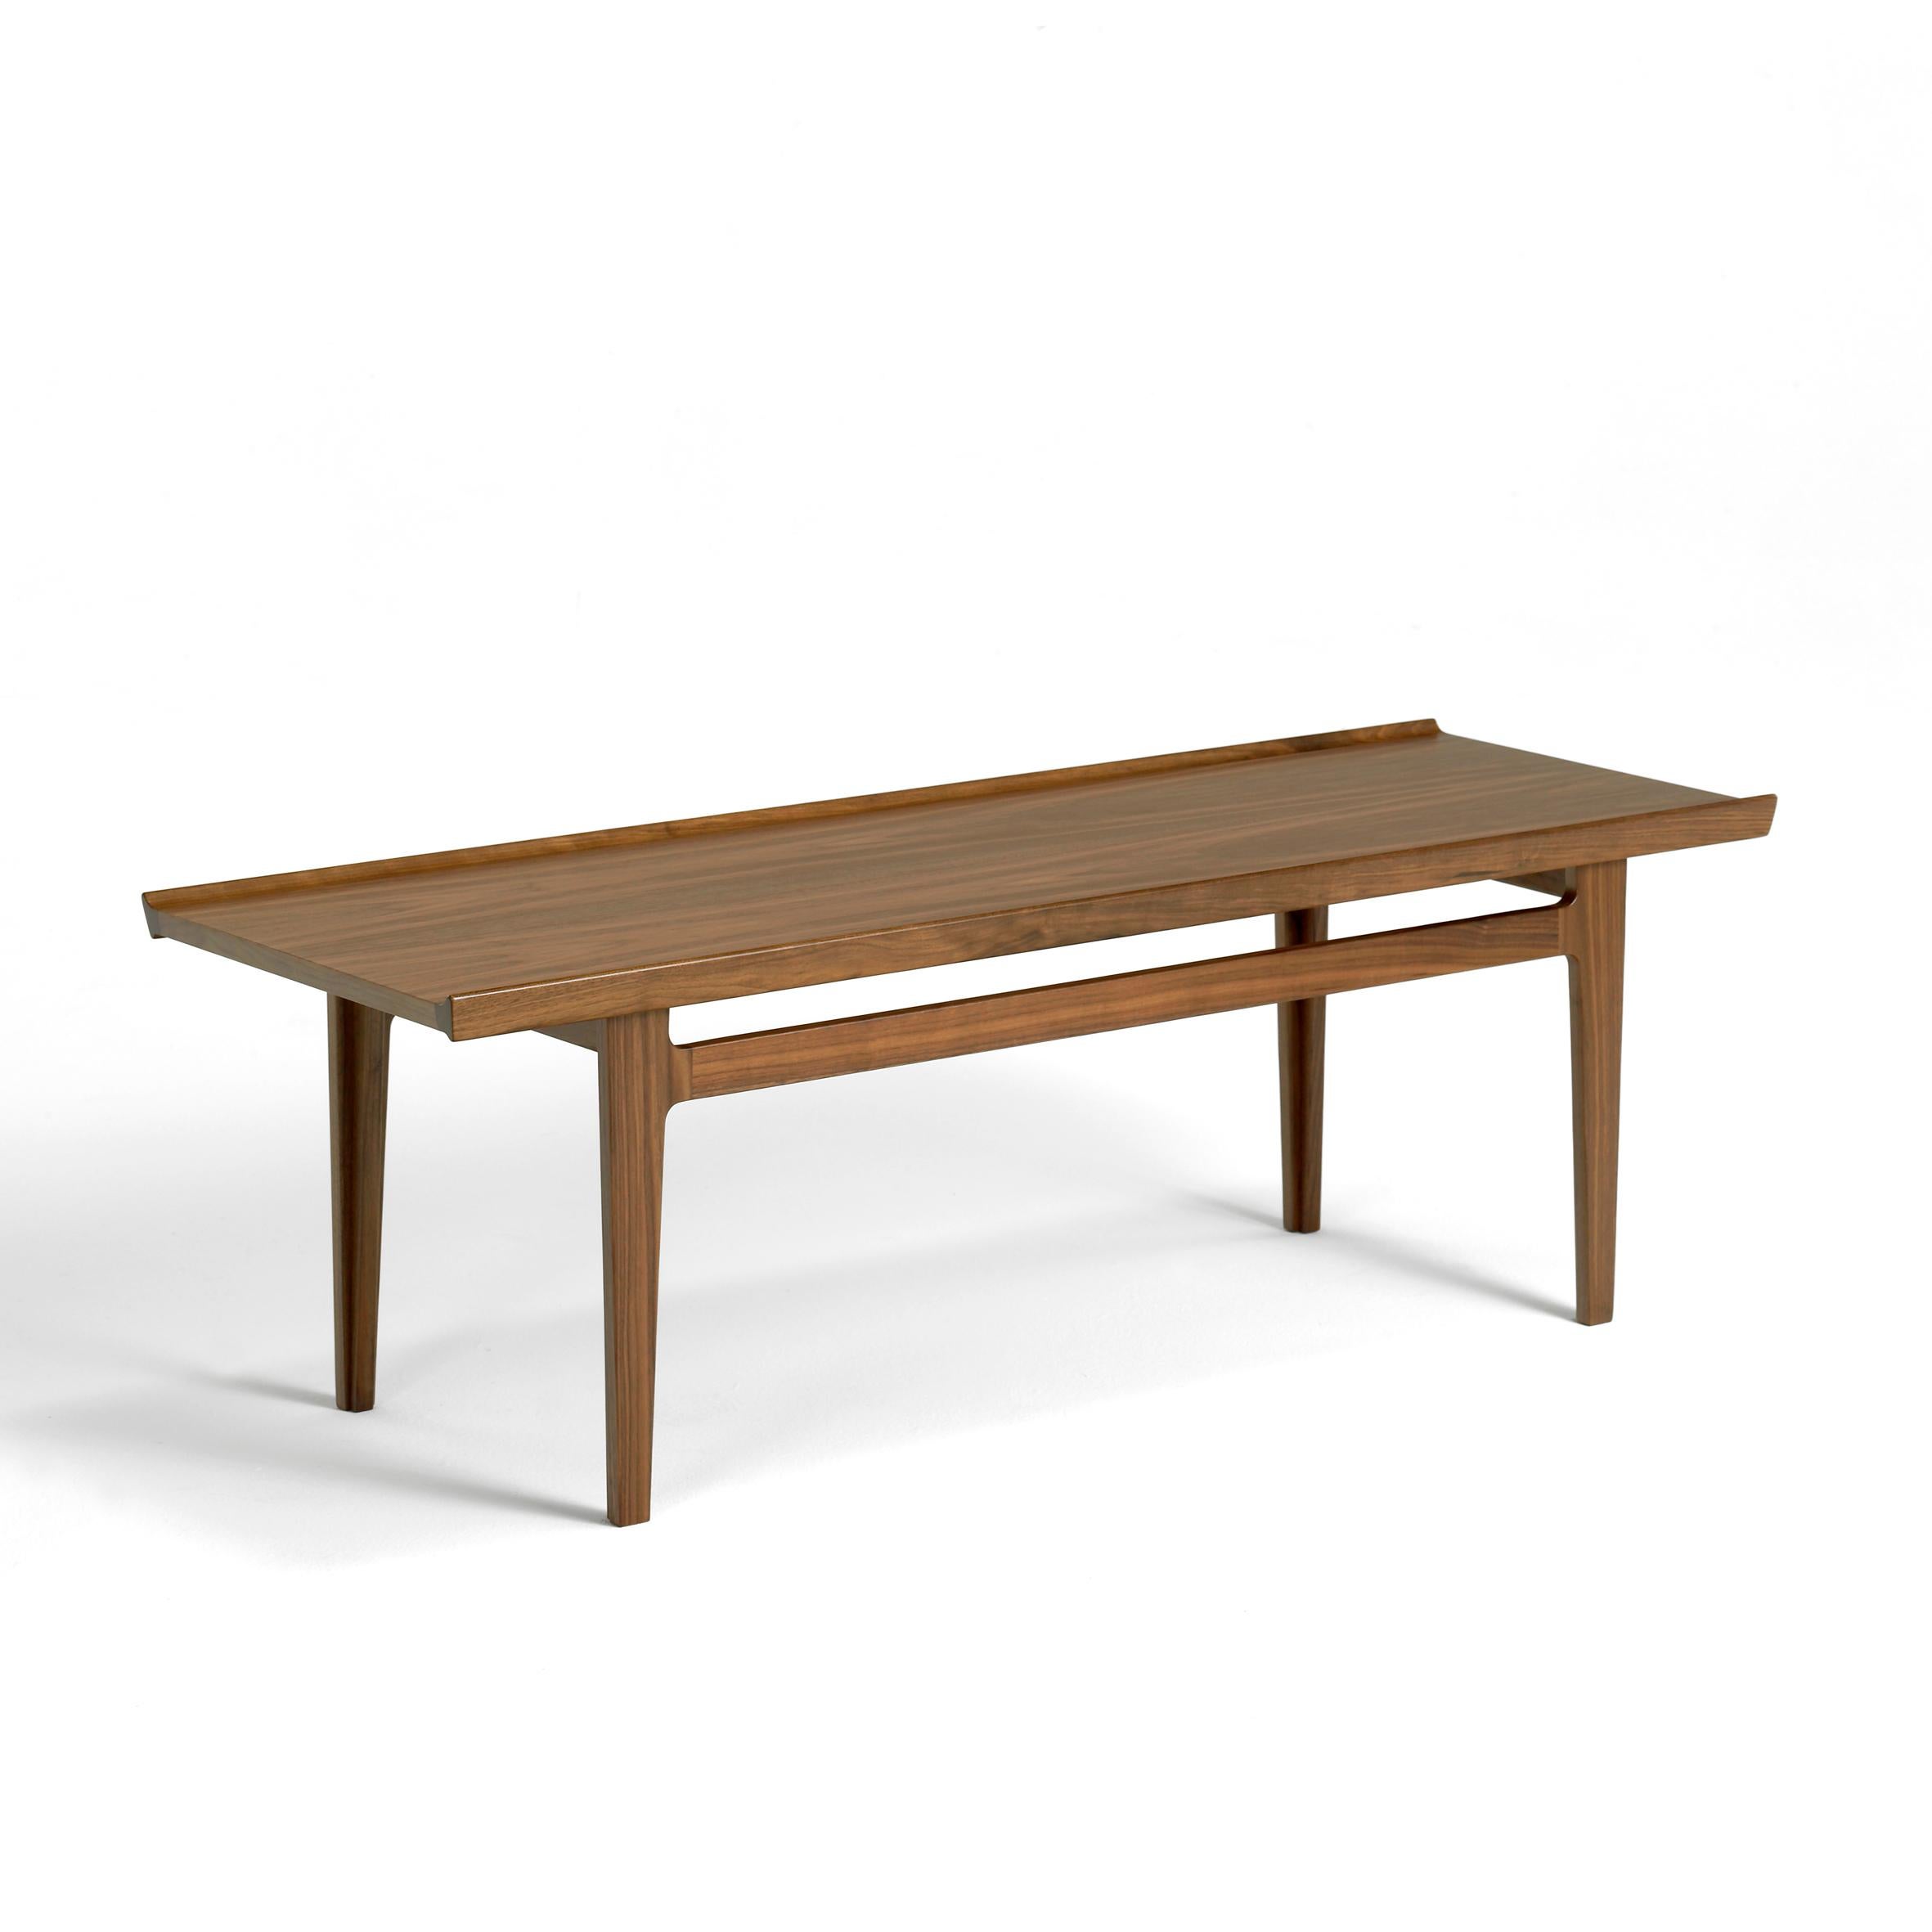 Danish Finn Juhl 500 Wood Table Long Version